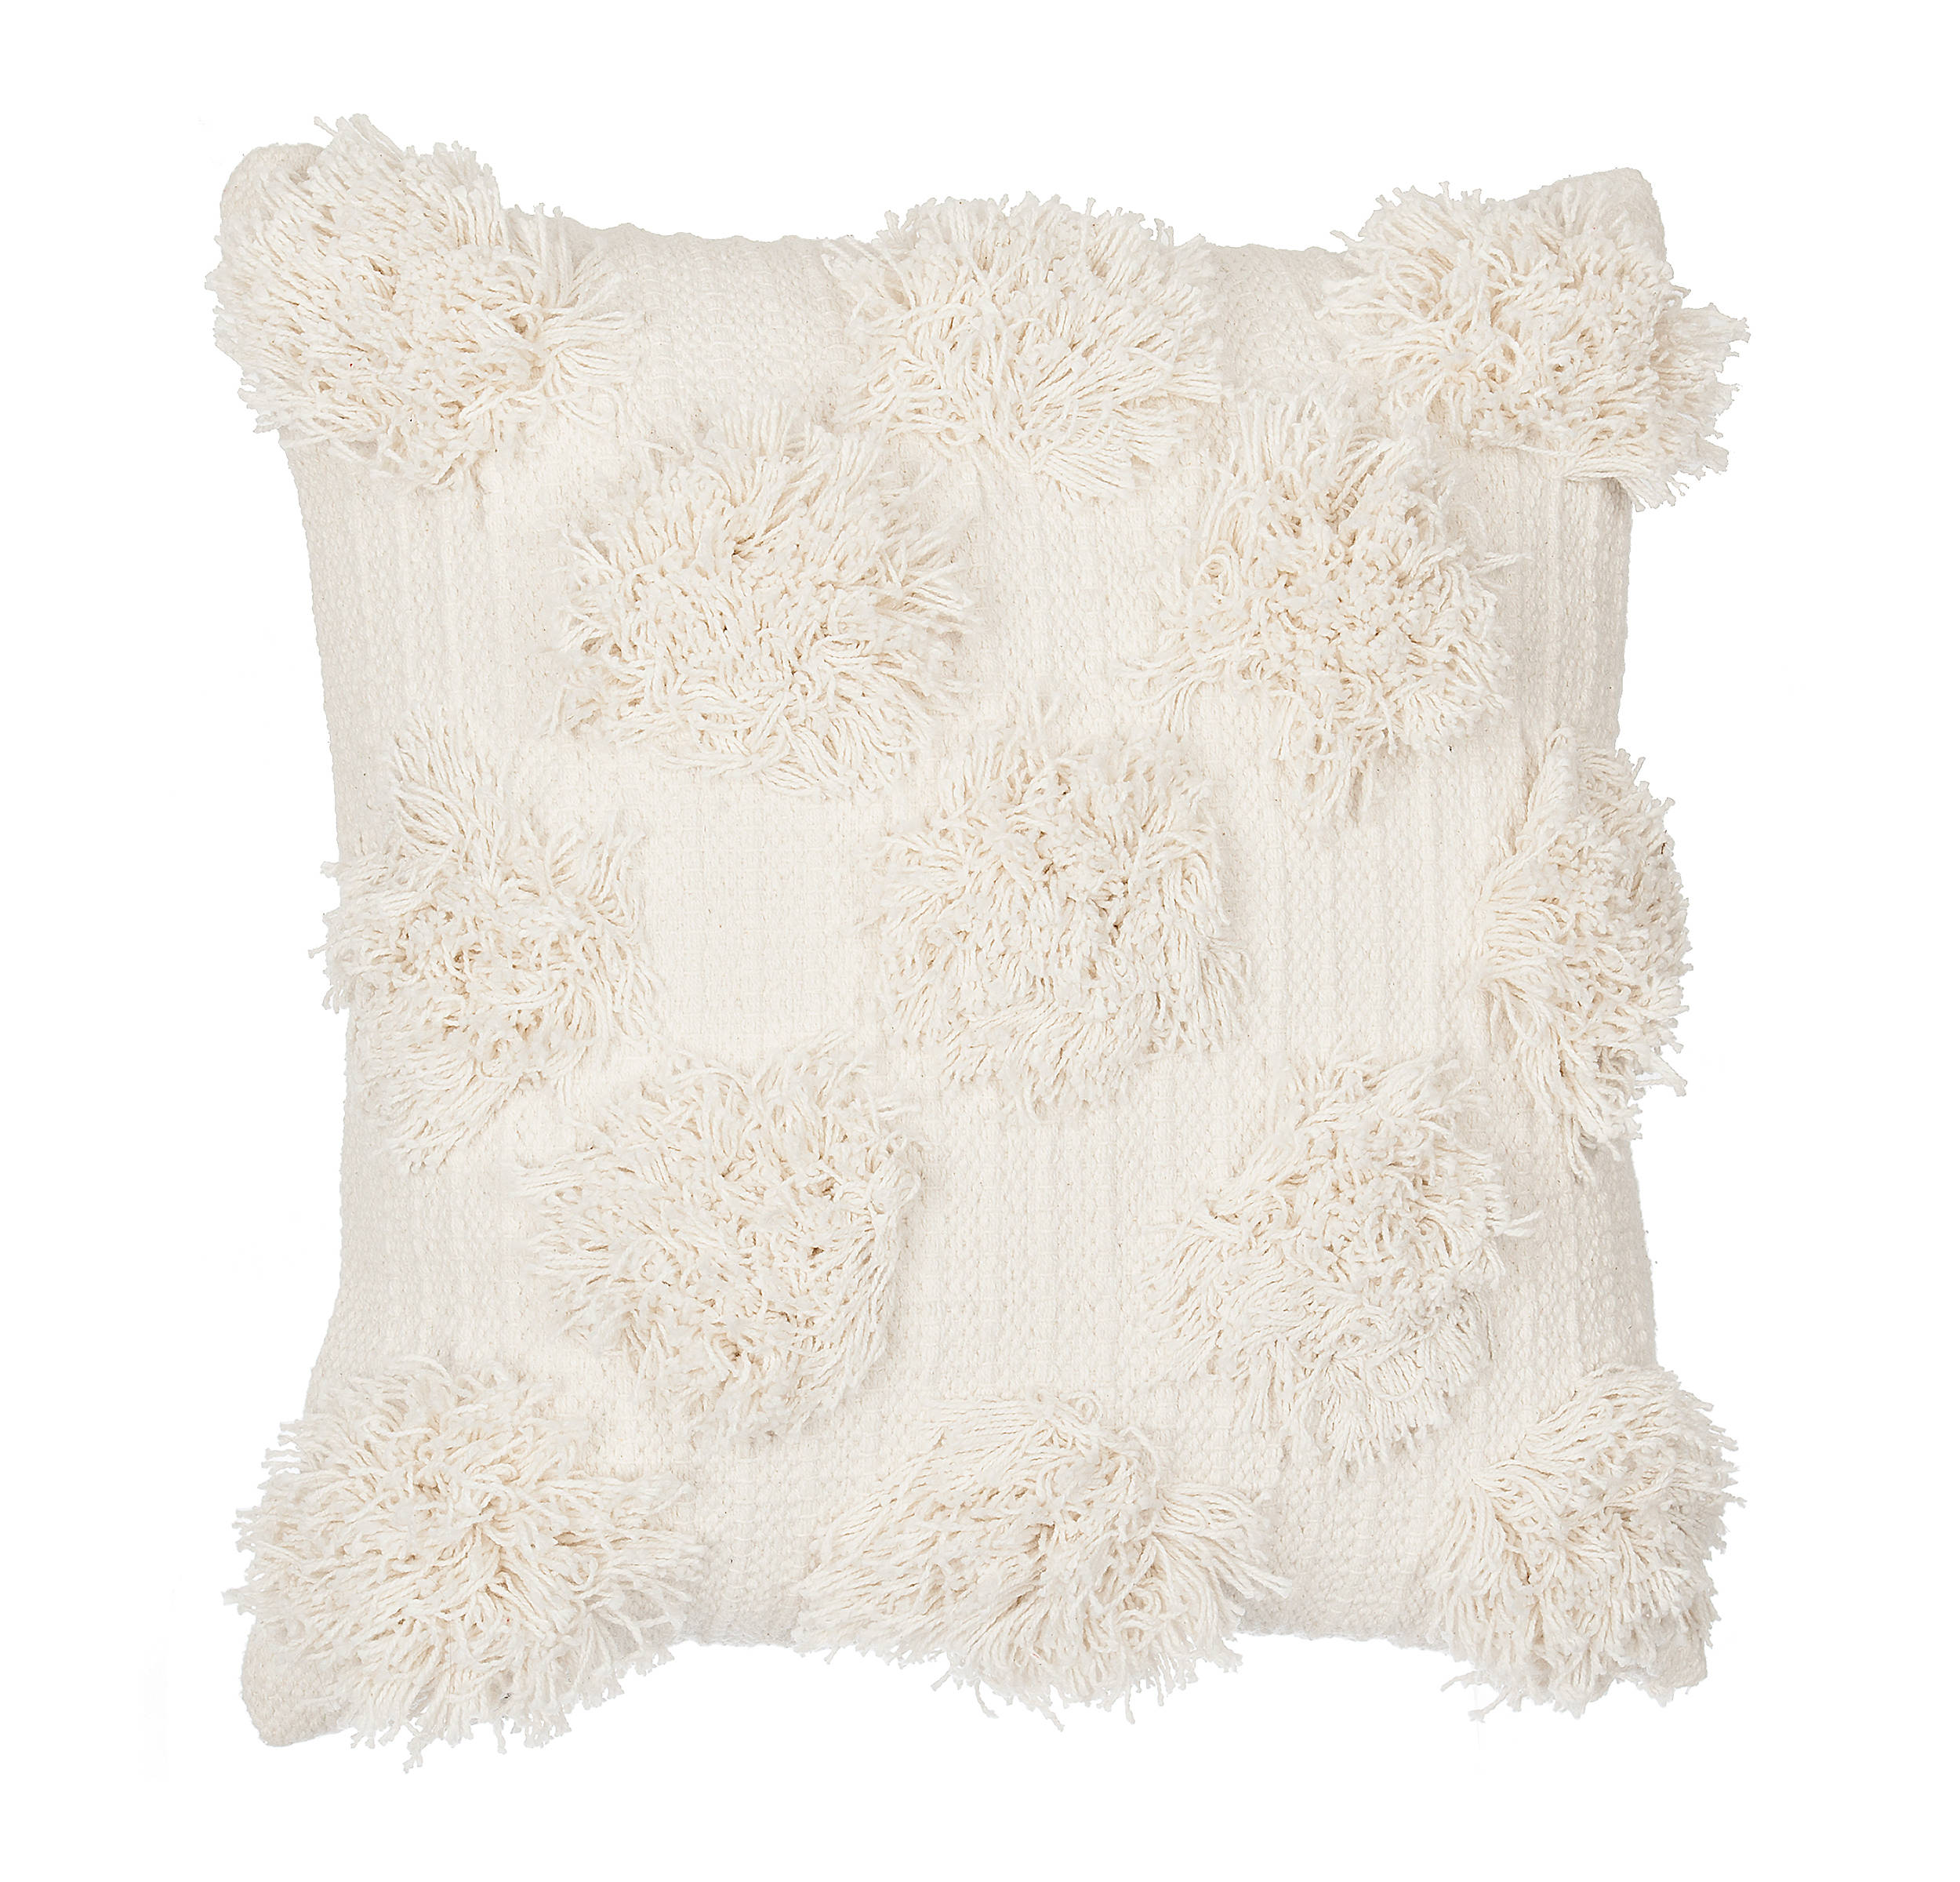 Shop Ivory Shaggy Dot Pillow from Kirkland's on Openhaus